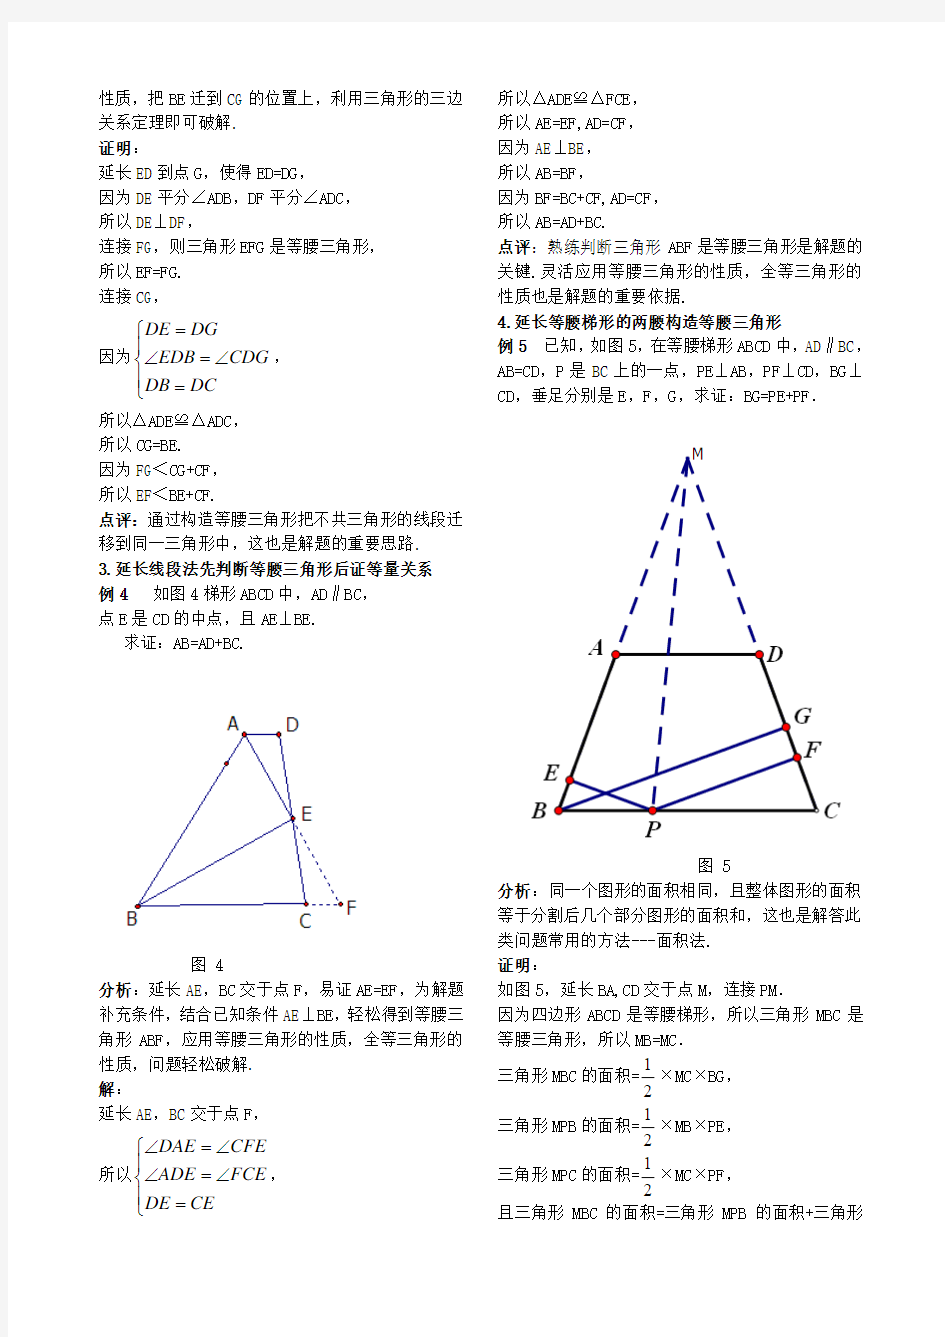 构造等腰三角形解题方法论